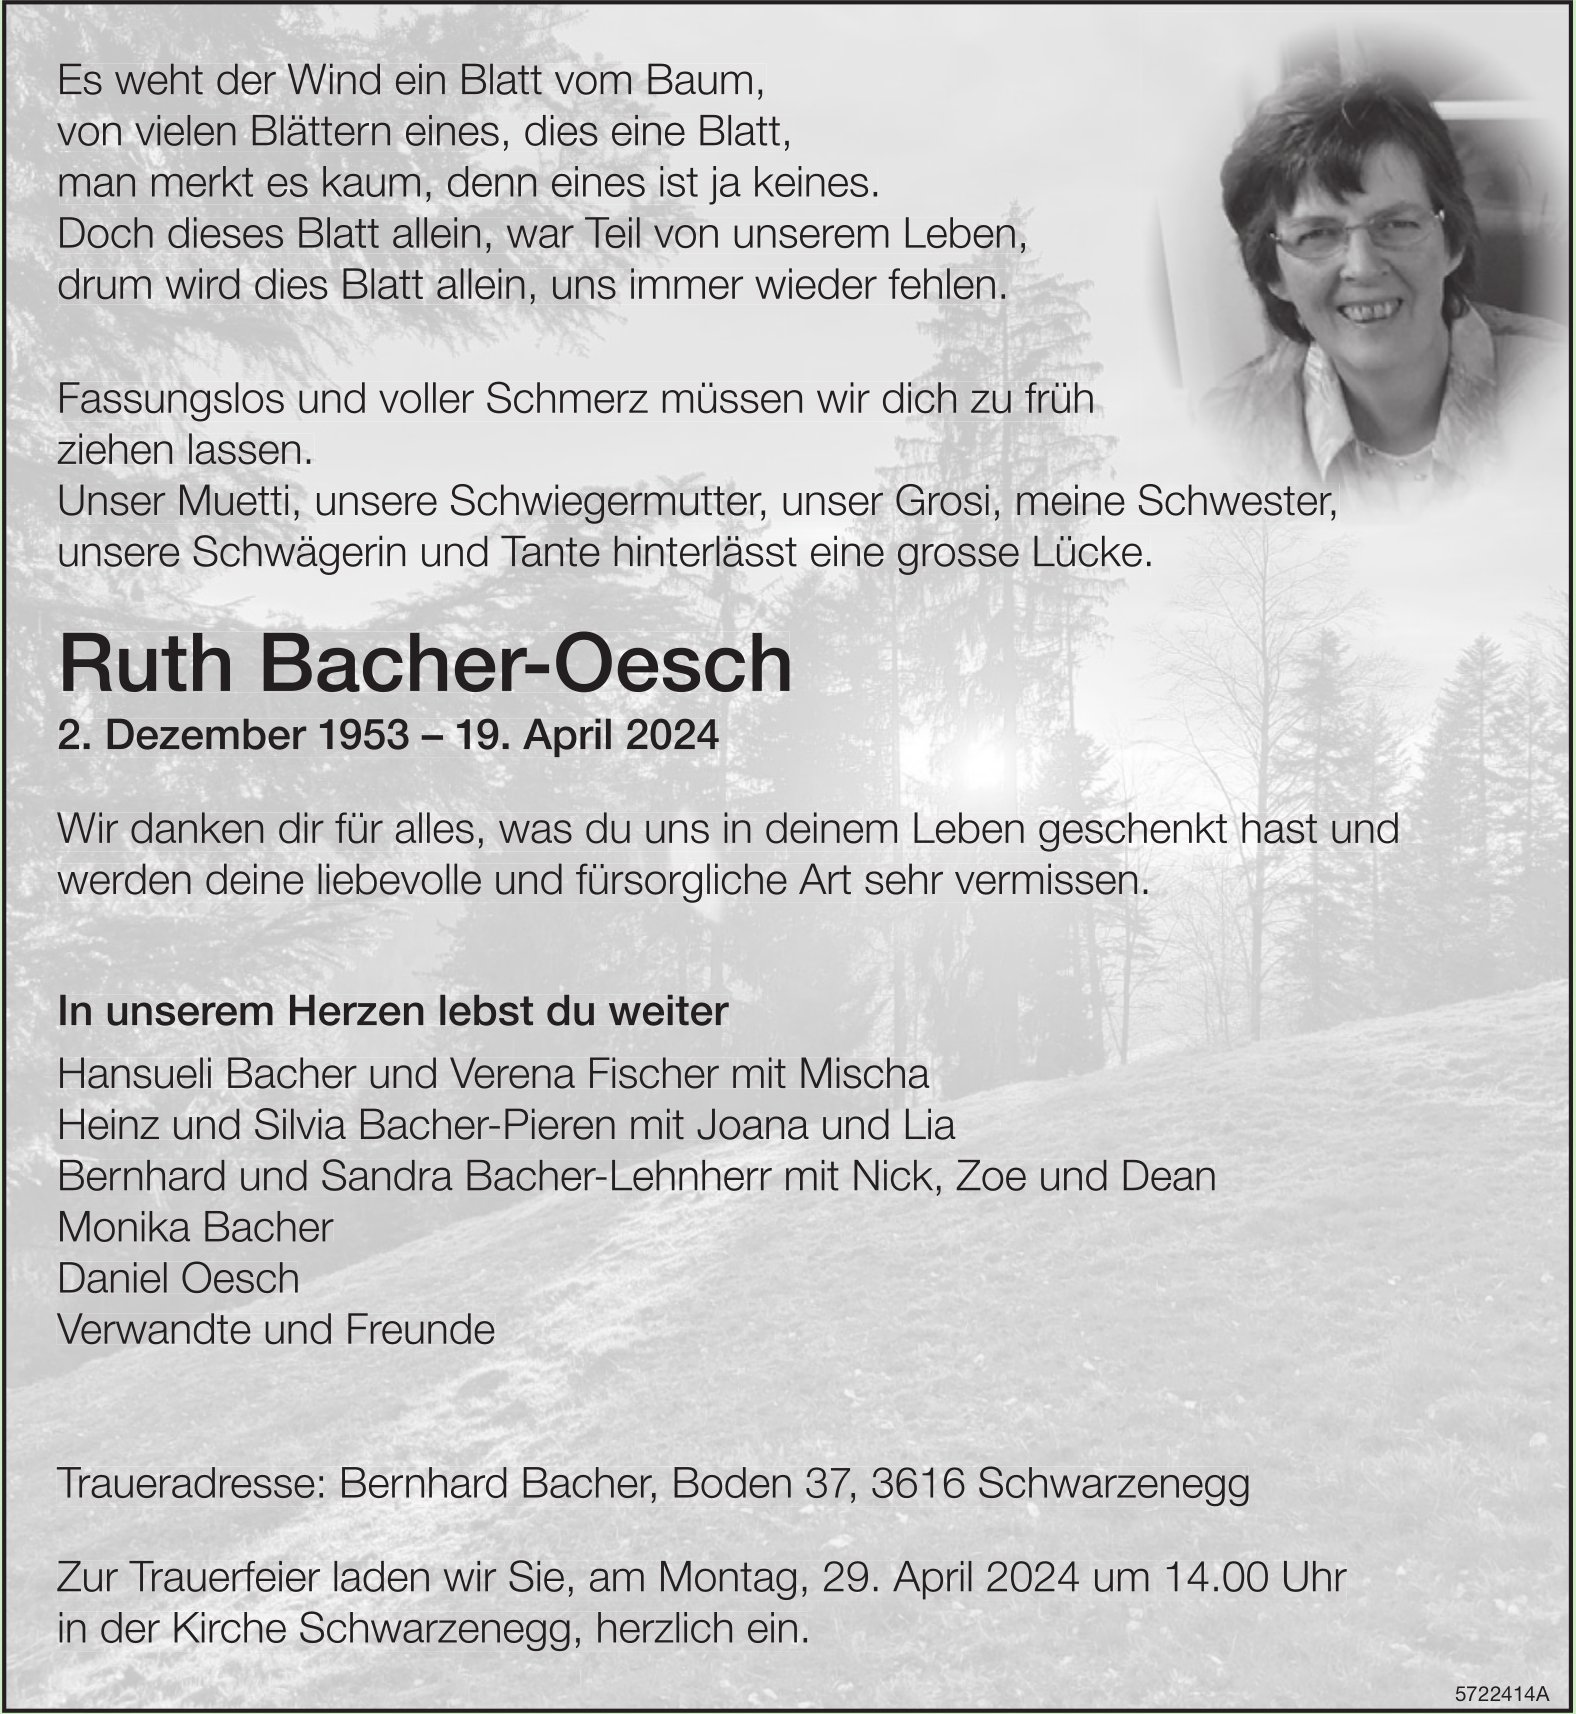 Bacher-Oesch Ruth, April 2024 / TA